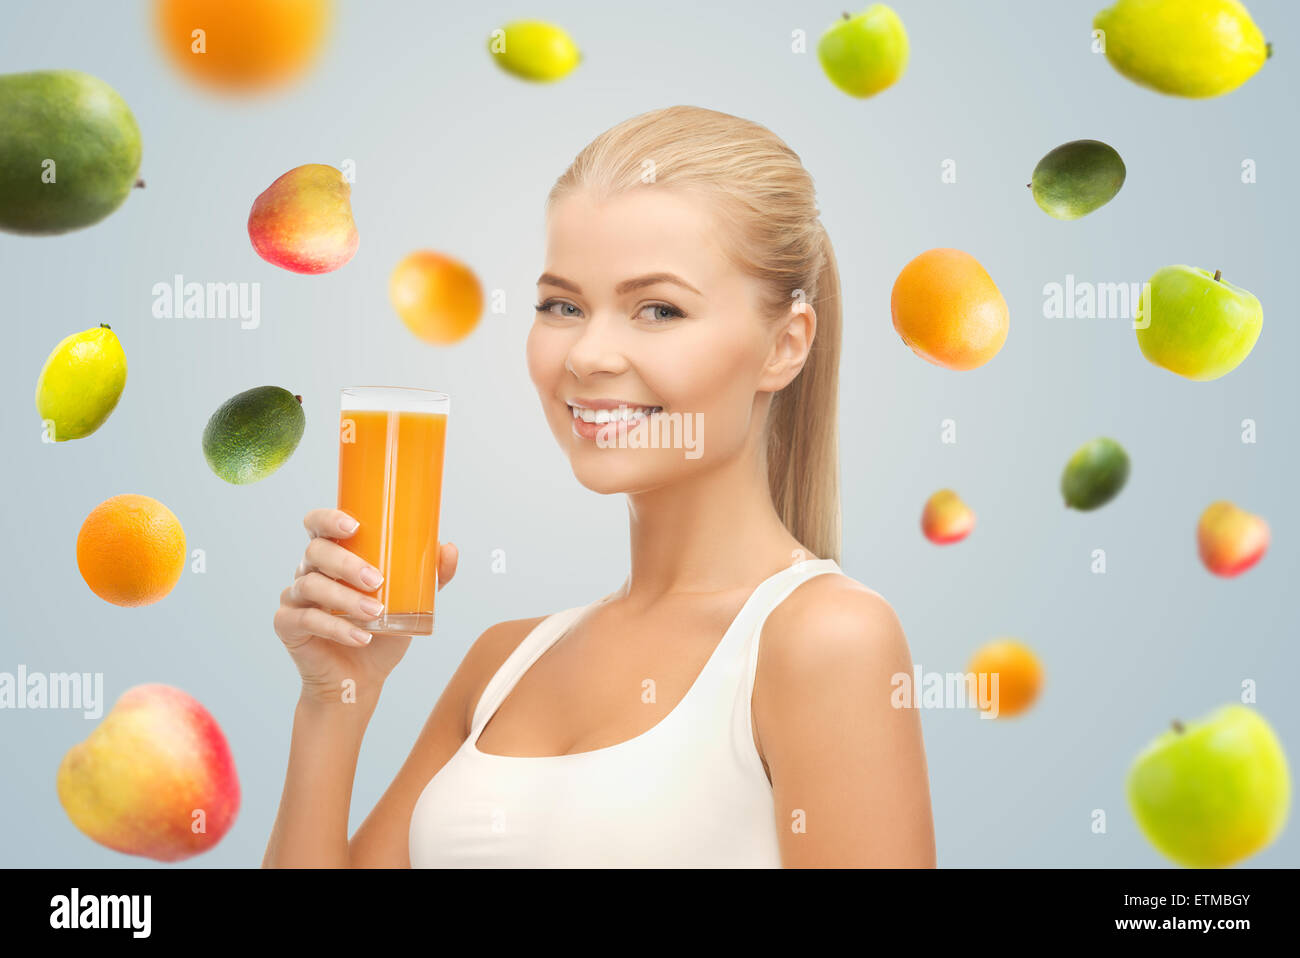 happy woman holding glass of orange juice Stock Photo